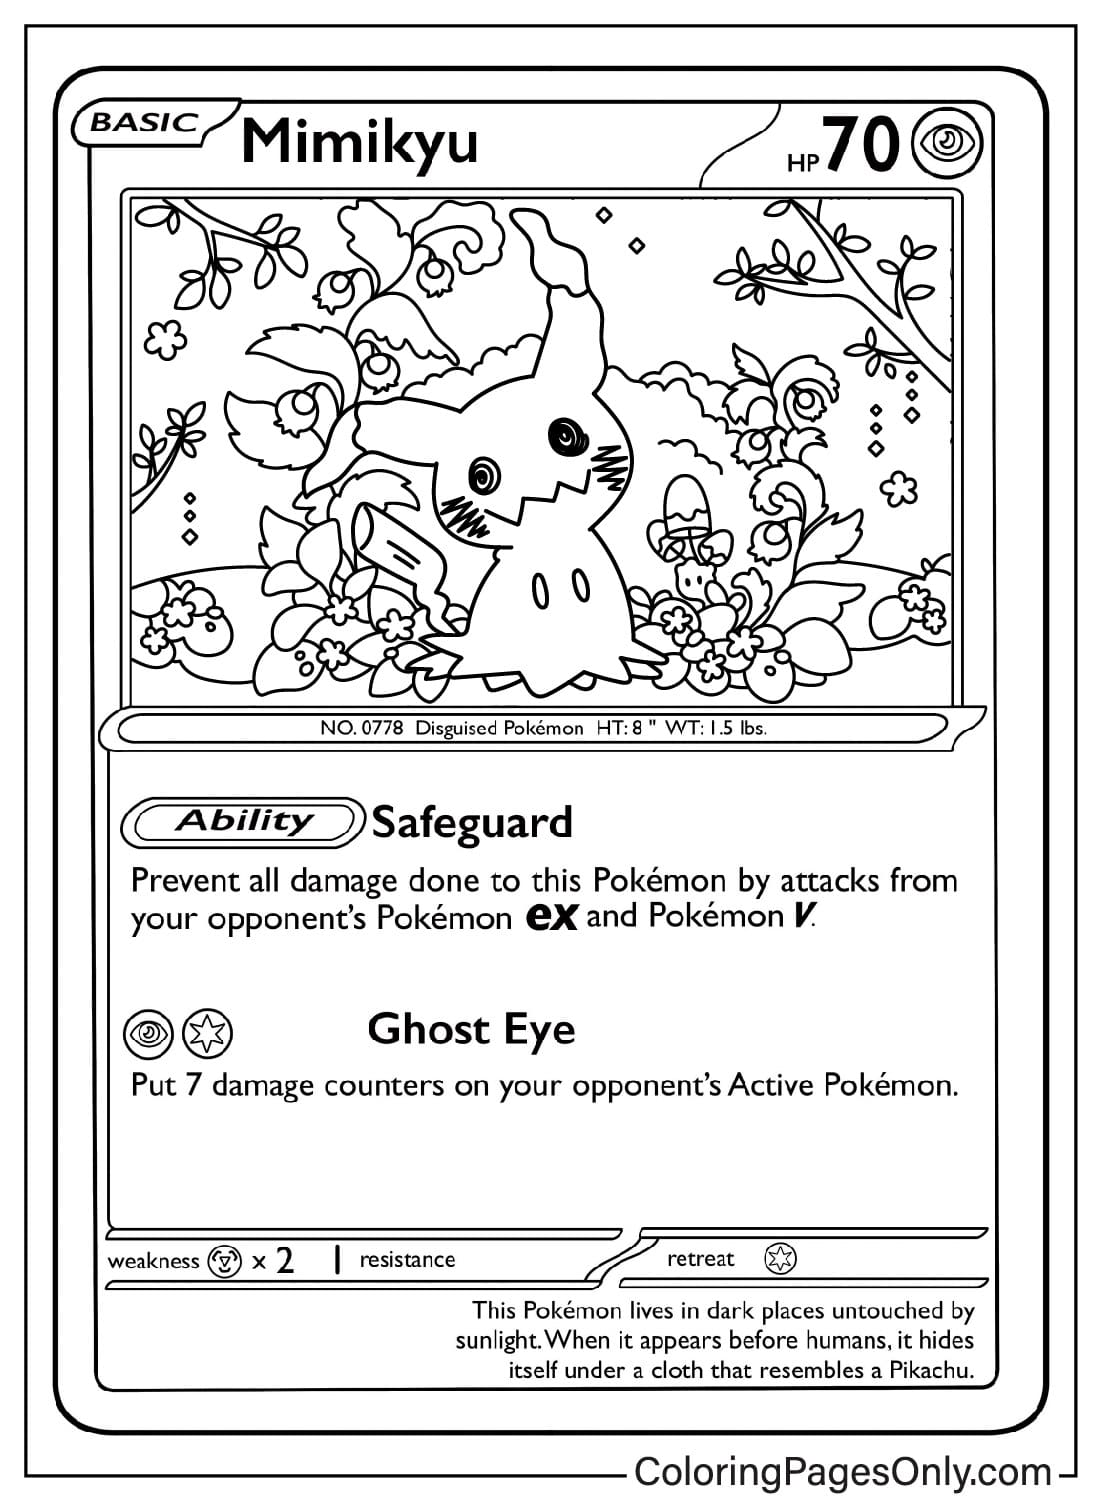 Carte Pokémon Mimikyu de la carte Pokémon